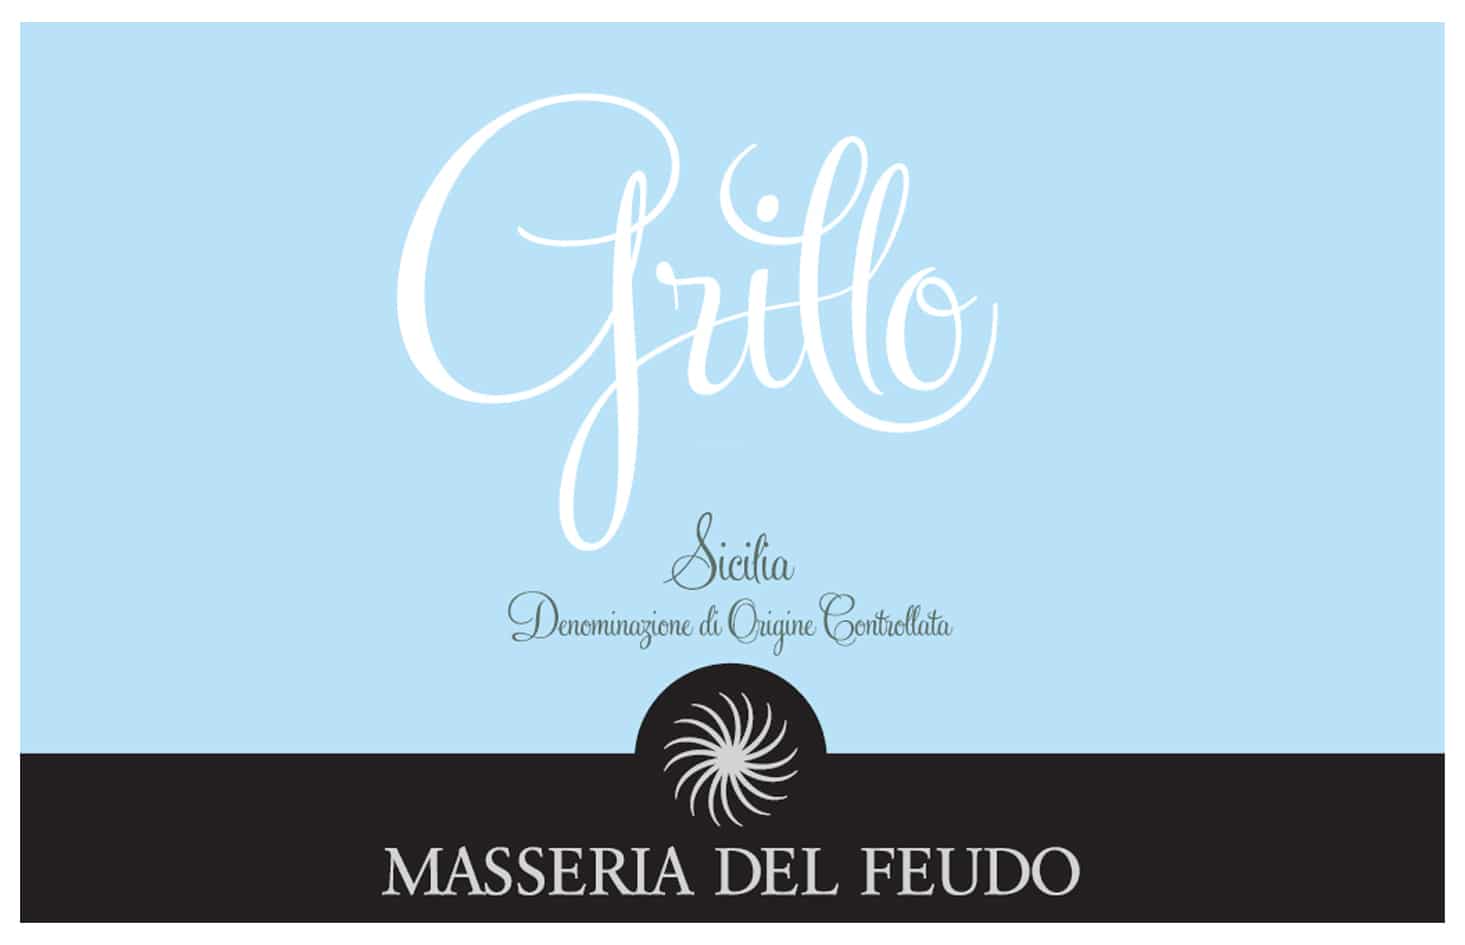 Berebene award for Grillo 2019 from Masseria del Feudo